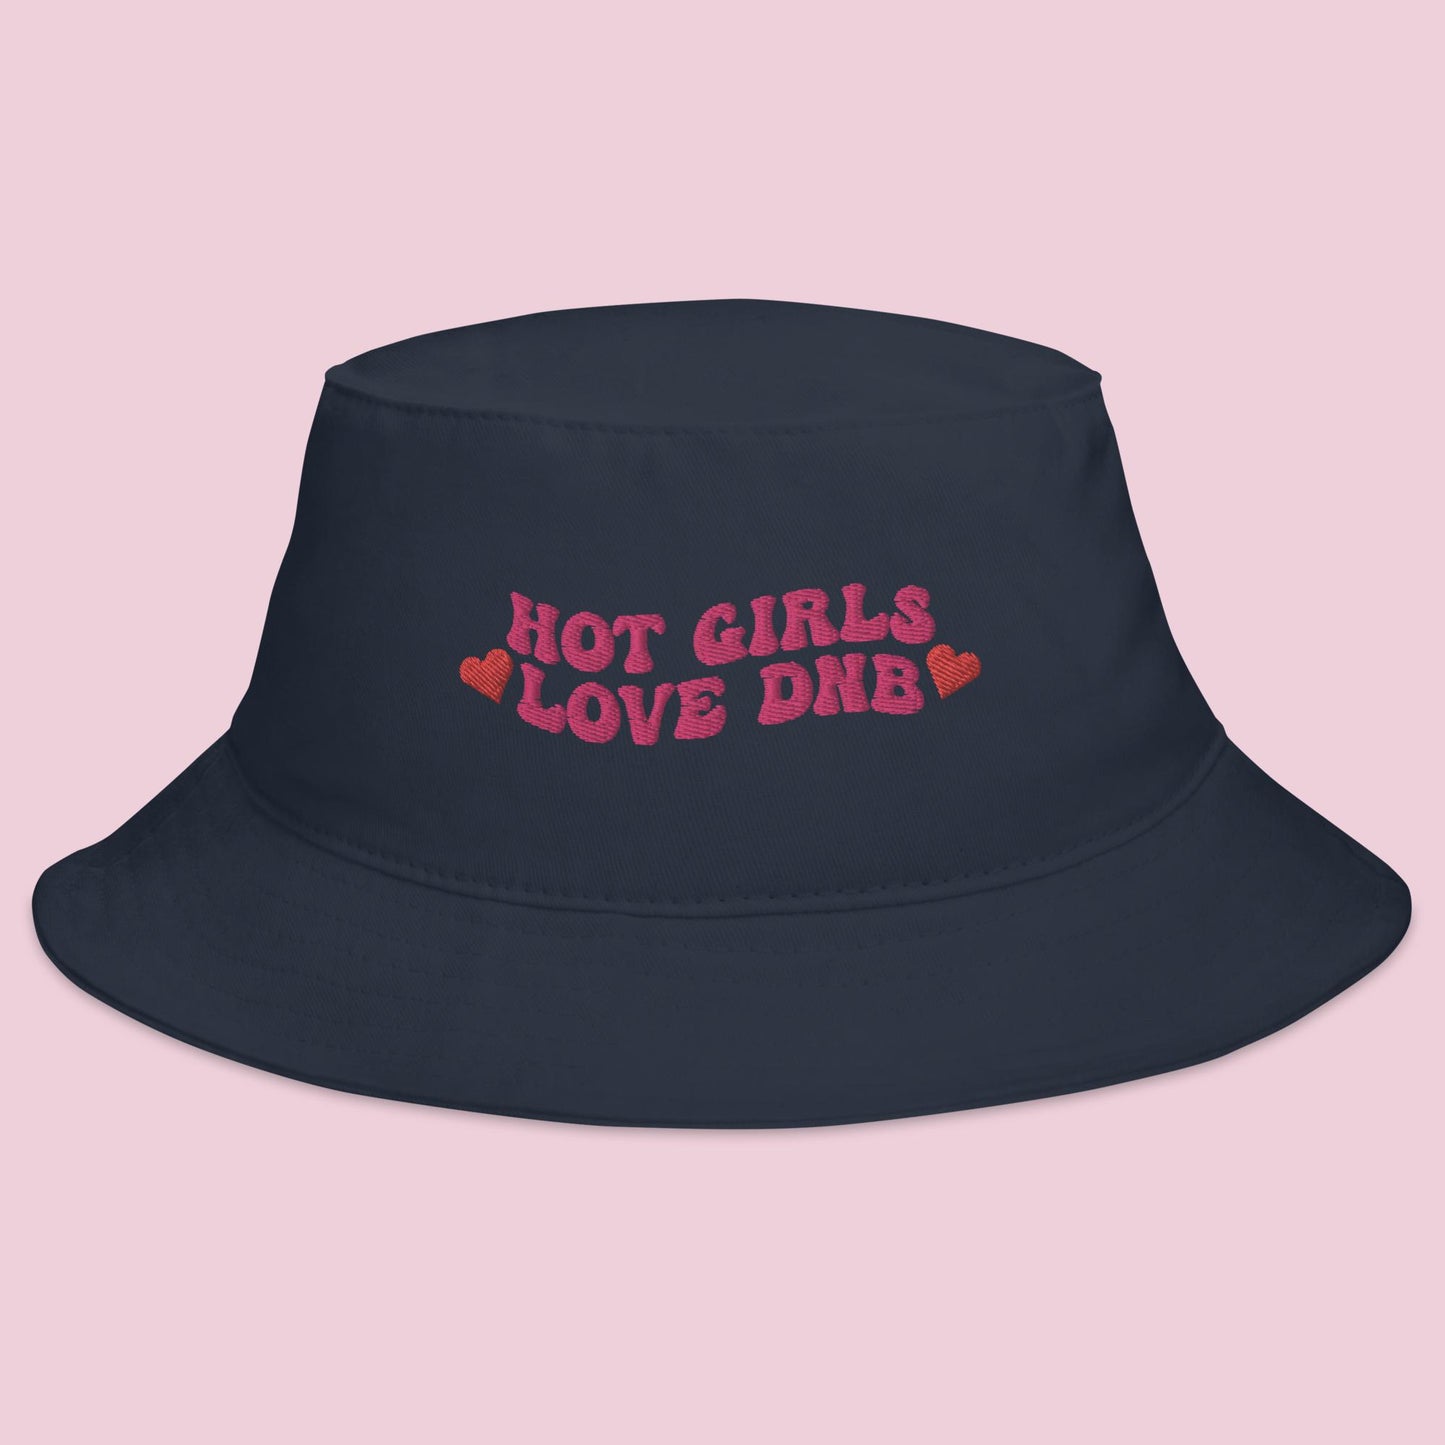 Hot Girls Love Drum & Bass Bucket Hat